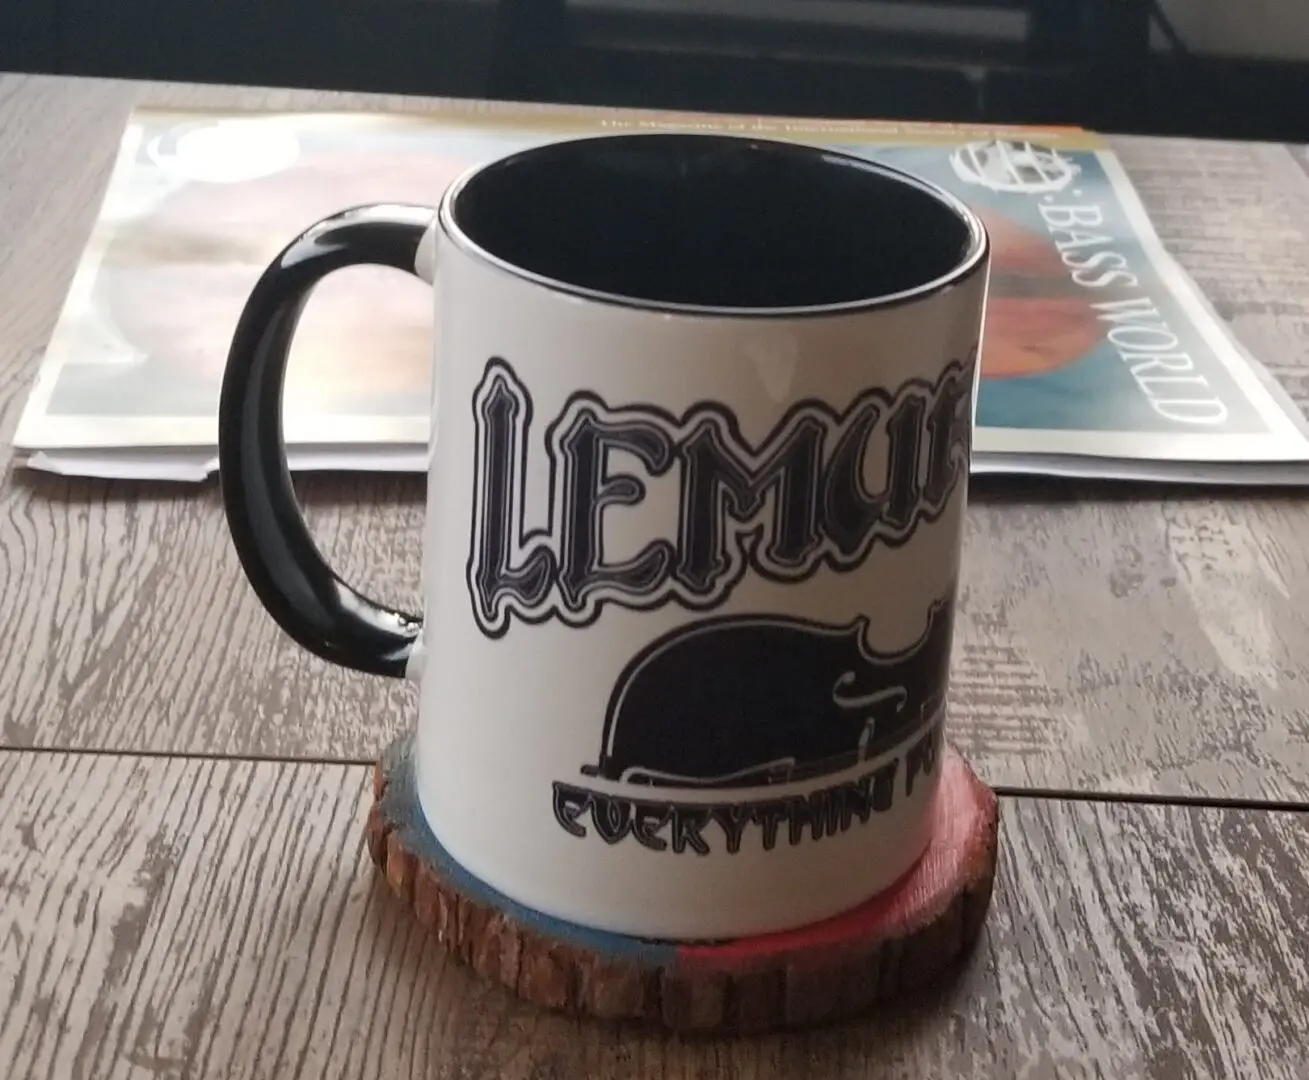 Lemur Logo on a white color cup